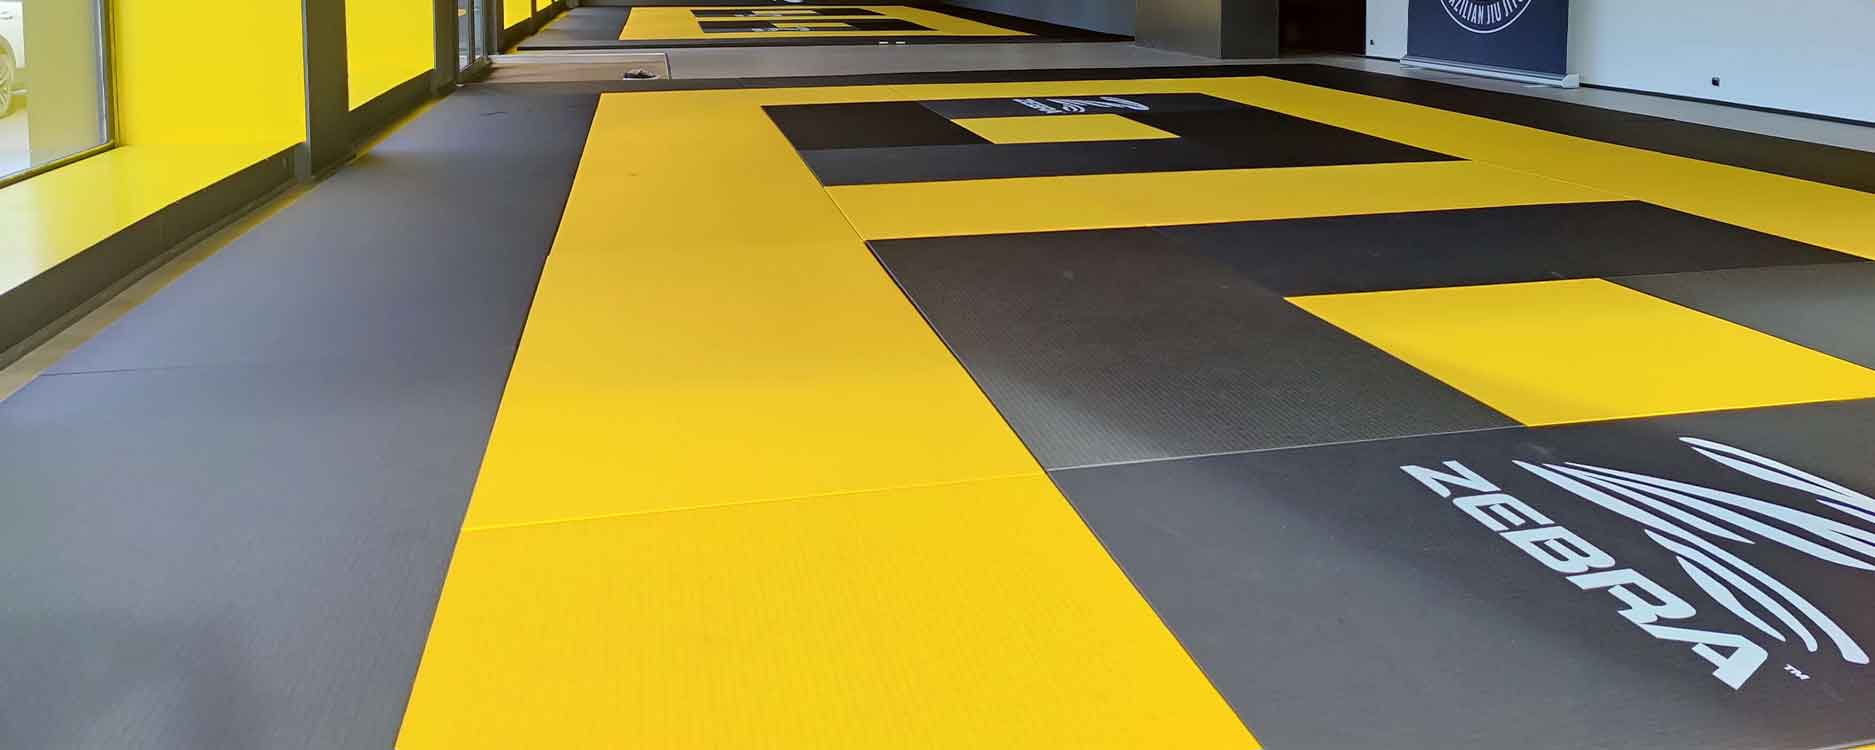 Judo Dojo mit schwarzen und gelben ZEBRA Judomatten